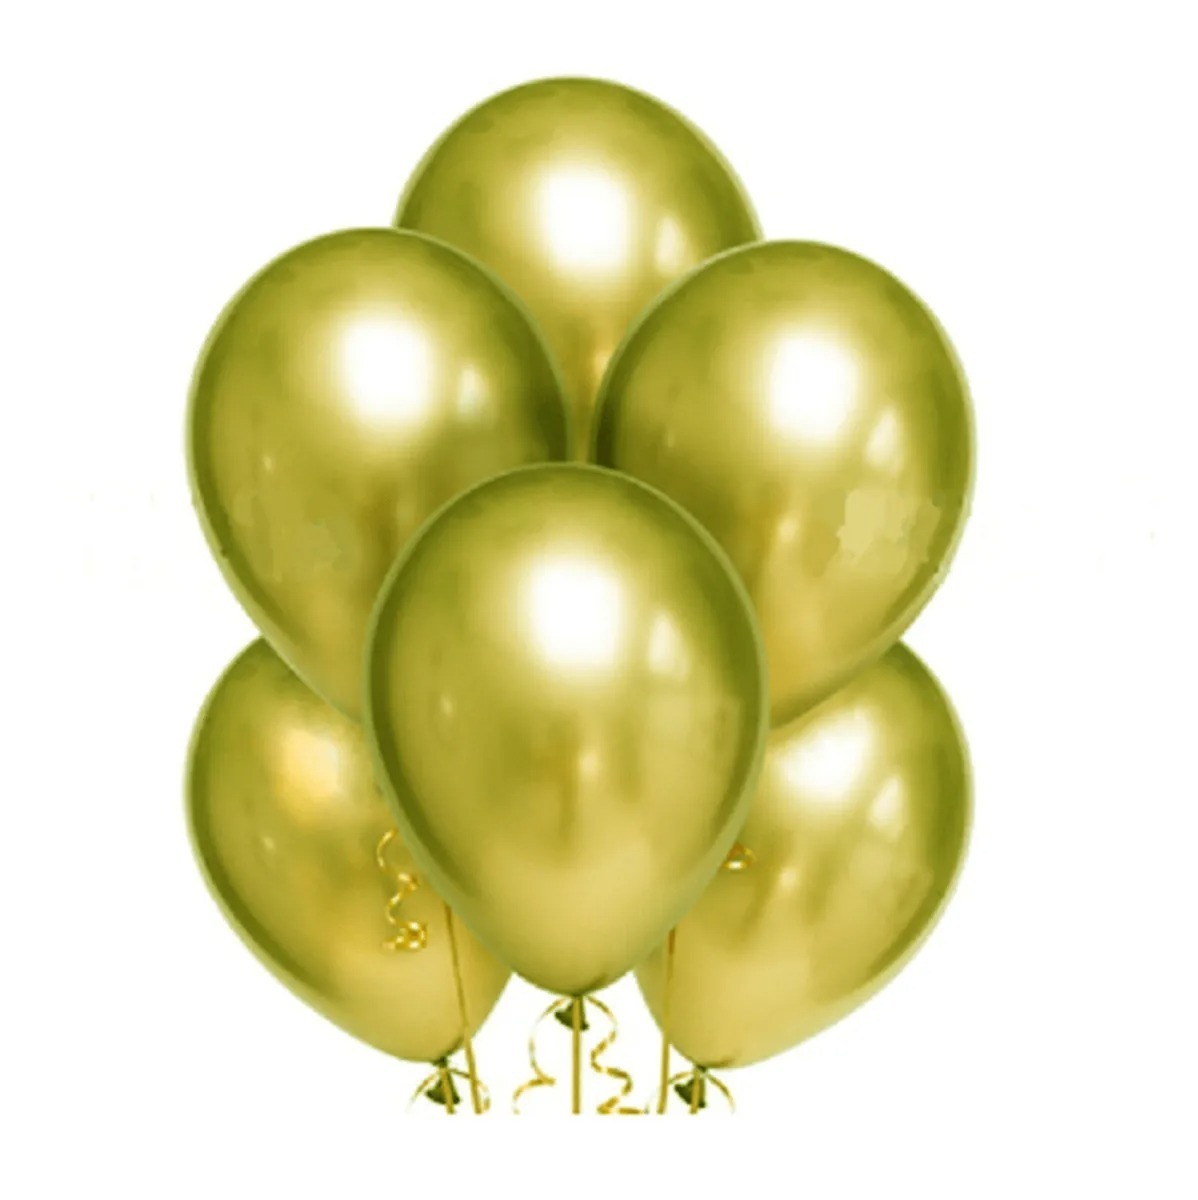 золотые воздушные шары фото